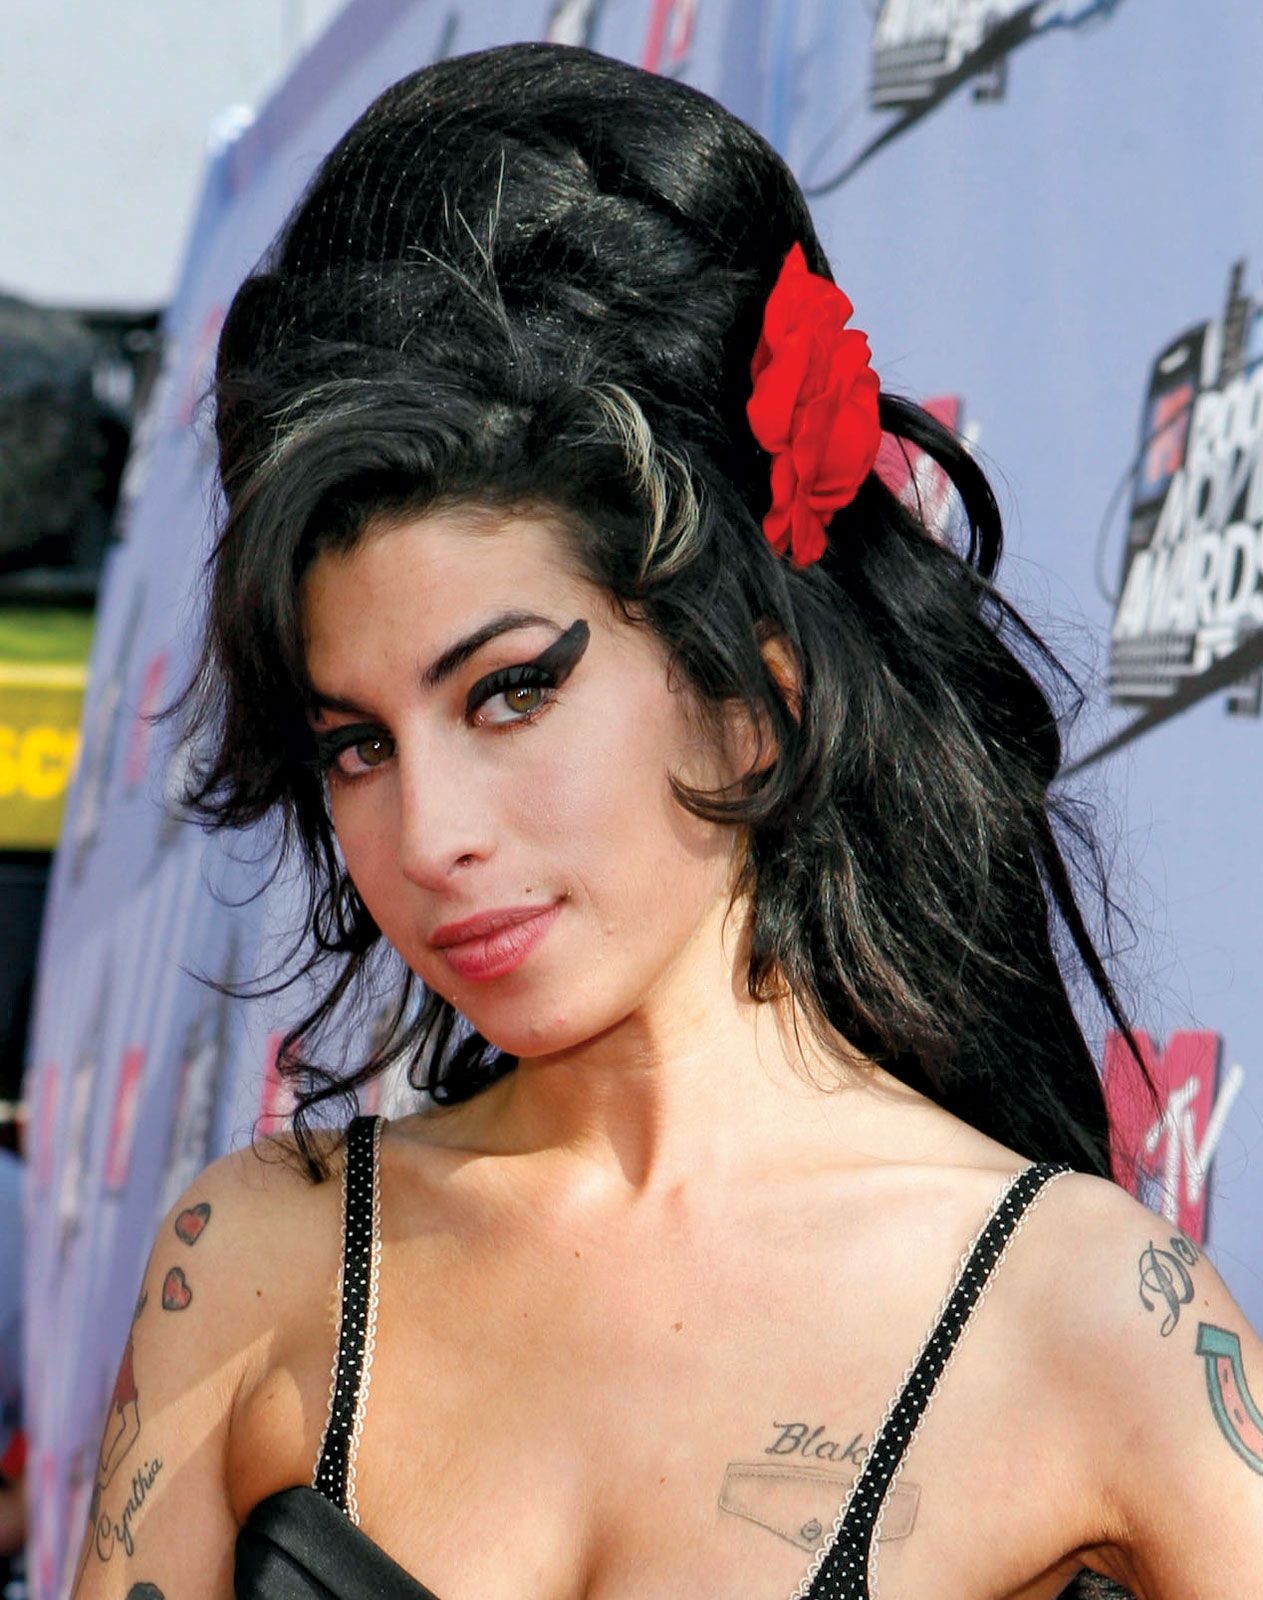  Amy Winehouse'i elulugu